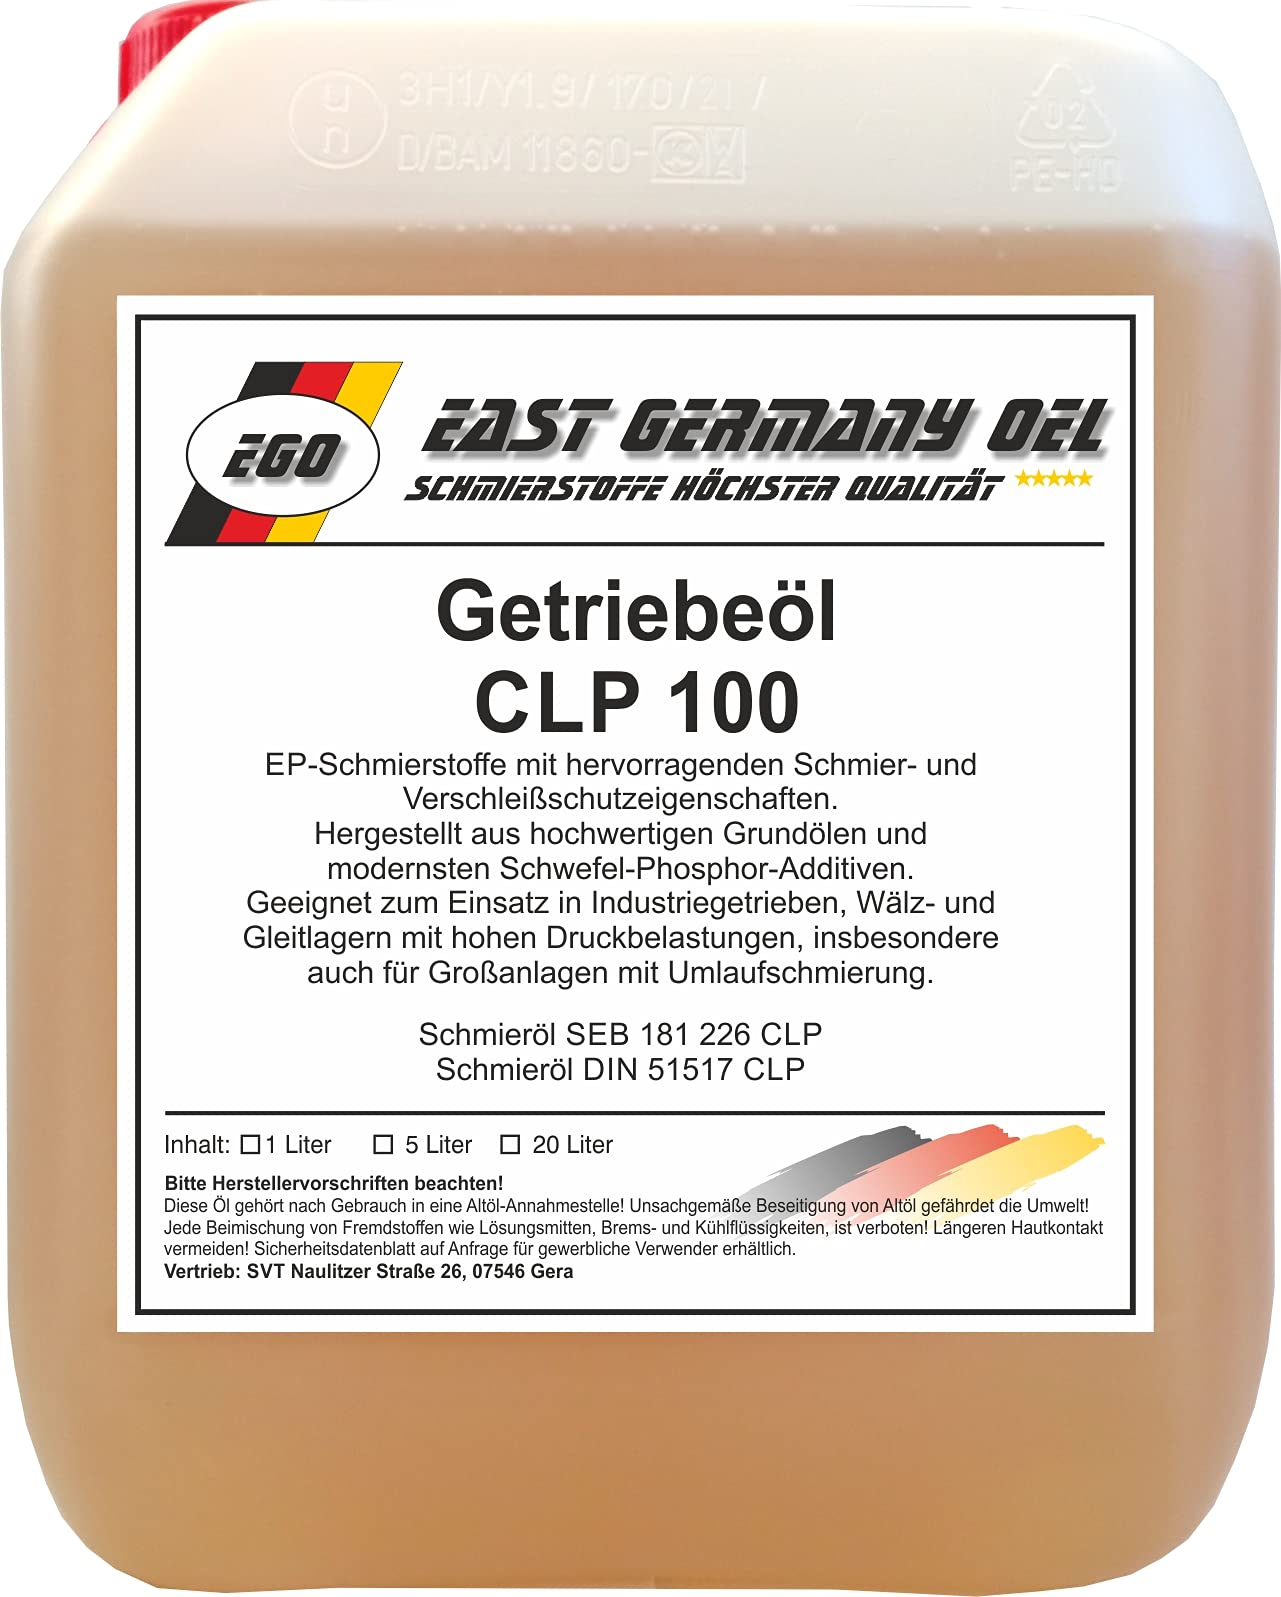 Getriebeöl CLP 100 Kanister 5 Liter von East Germany OIL